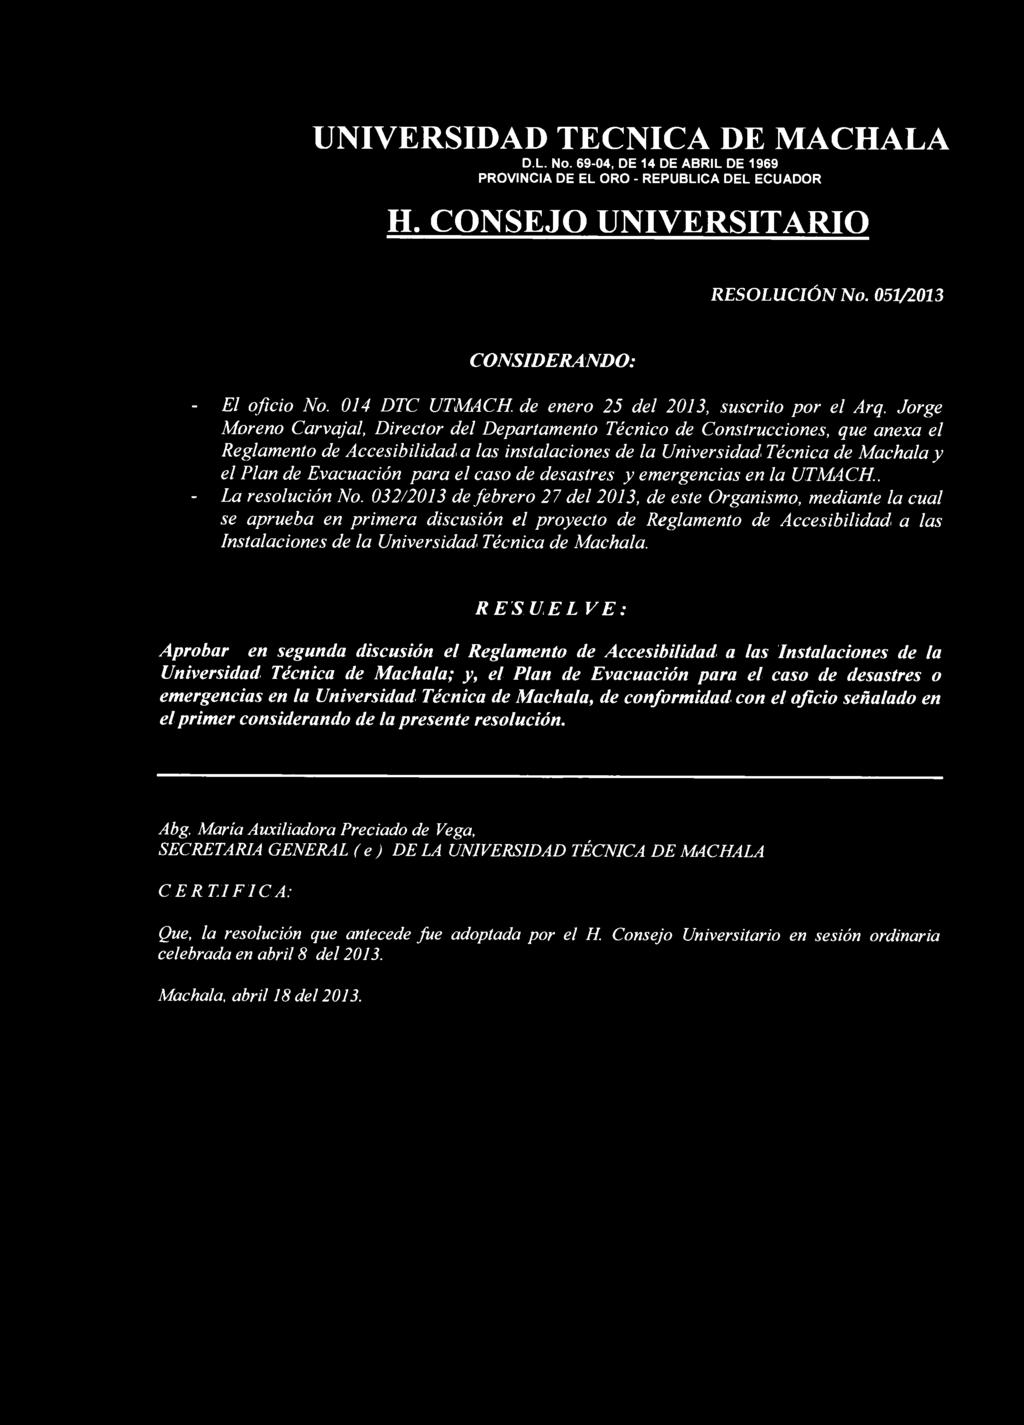 RESOLUCIÓN No. 051/2013 - El oficio No. 014 DTC UTMACH de enero 25 del 2013, suscrito por el Arq.